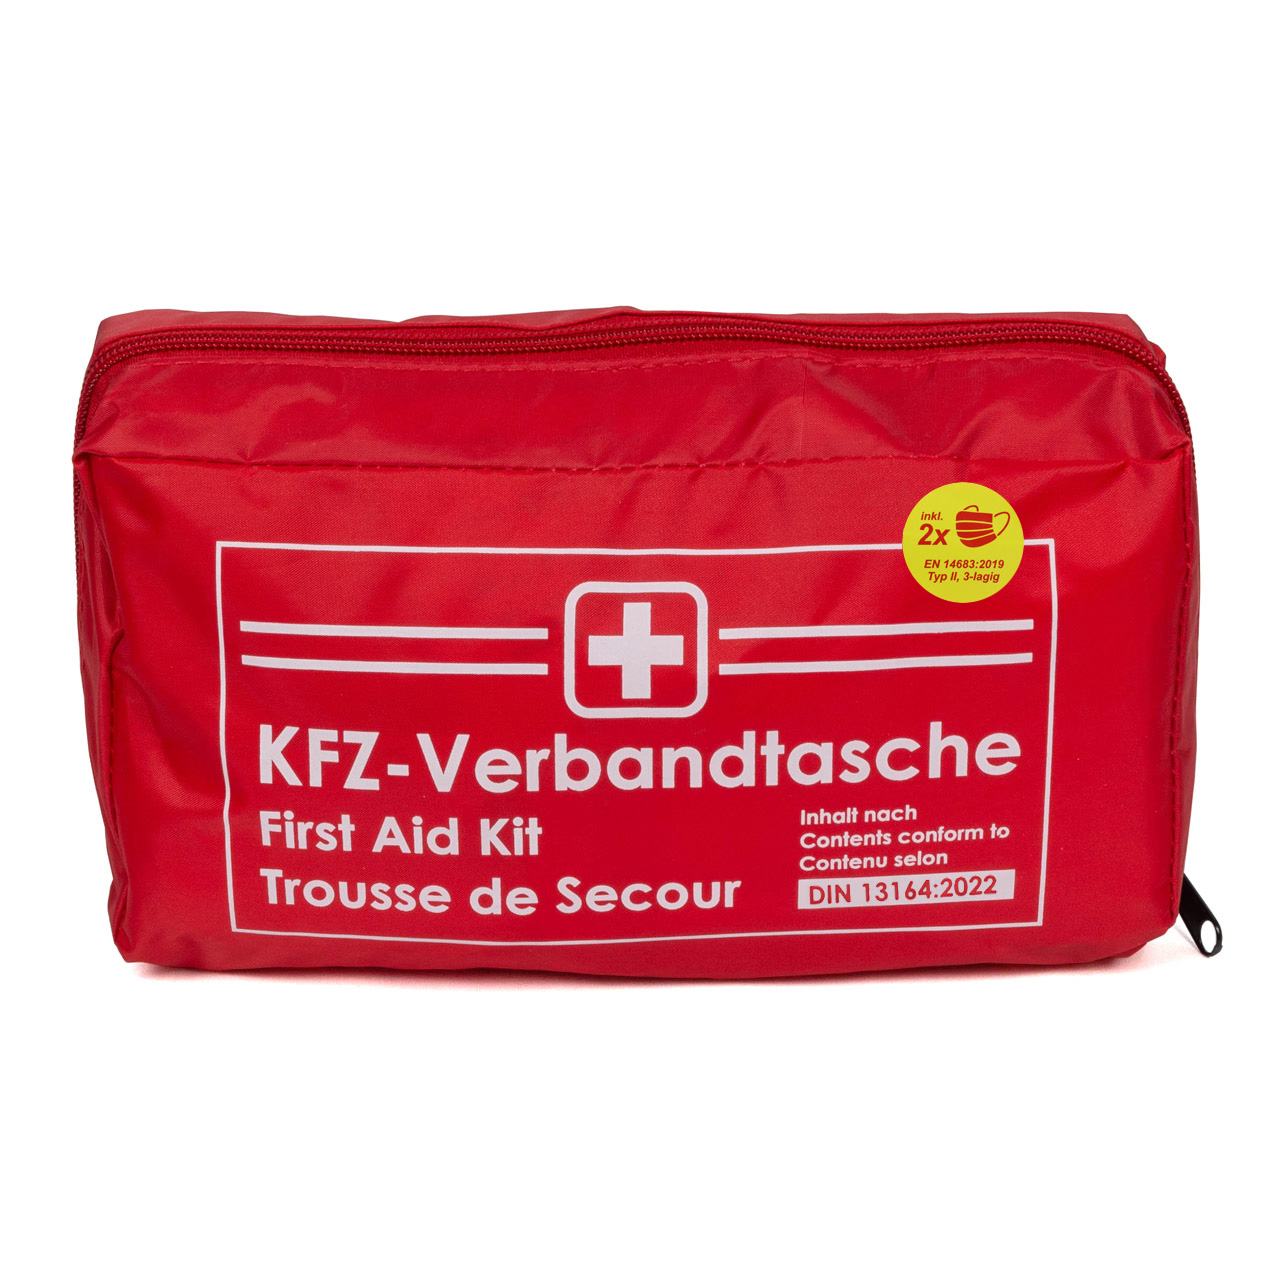 AUTO PKW KFZ Verbandtasche Verbandkasten Erste-Hilfe ROT DIN13164